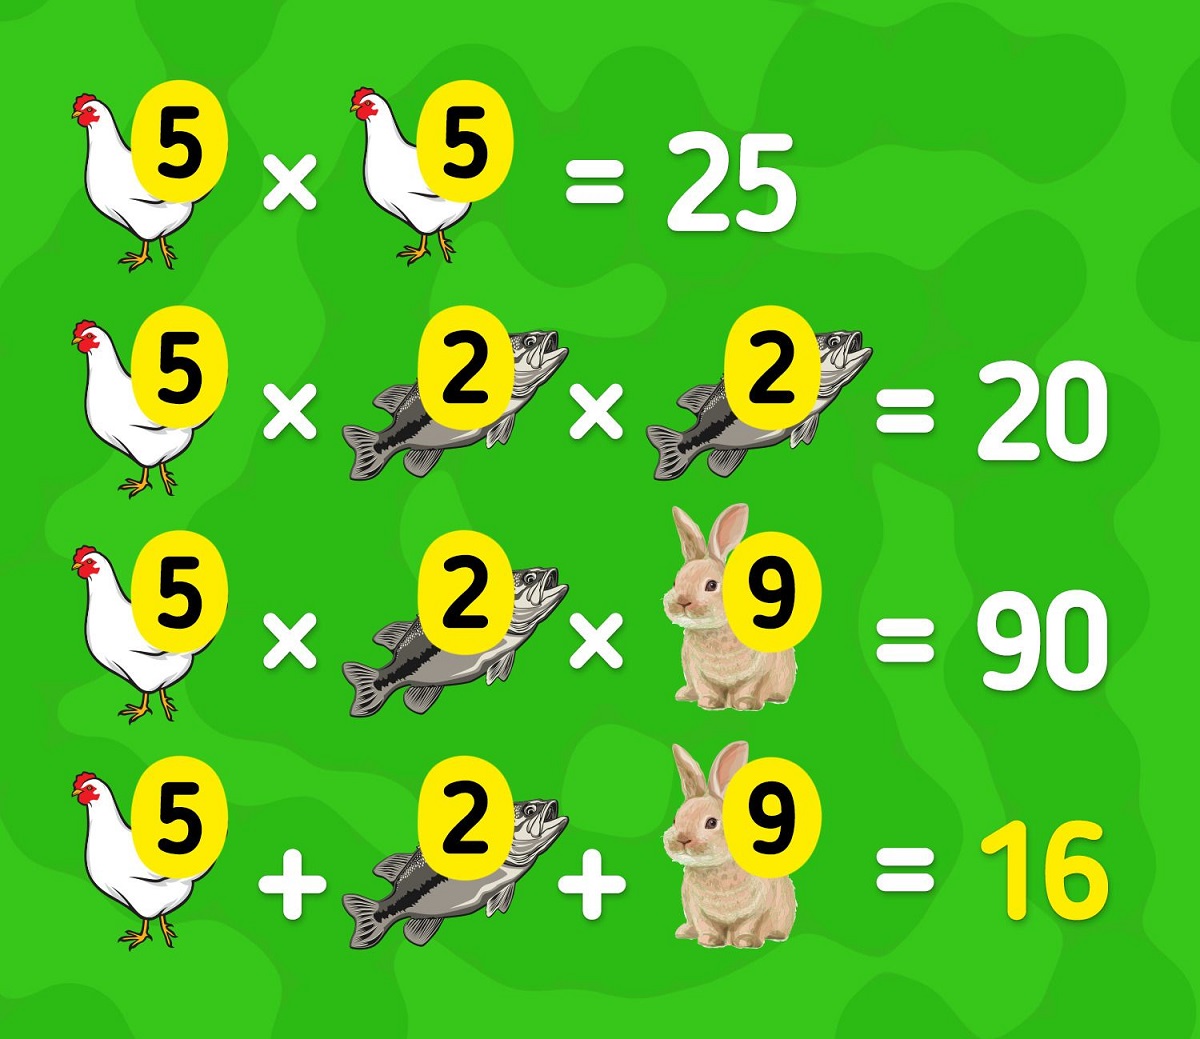 پاسخ آزمون محاسبه ارزش عددی حیوانات